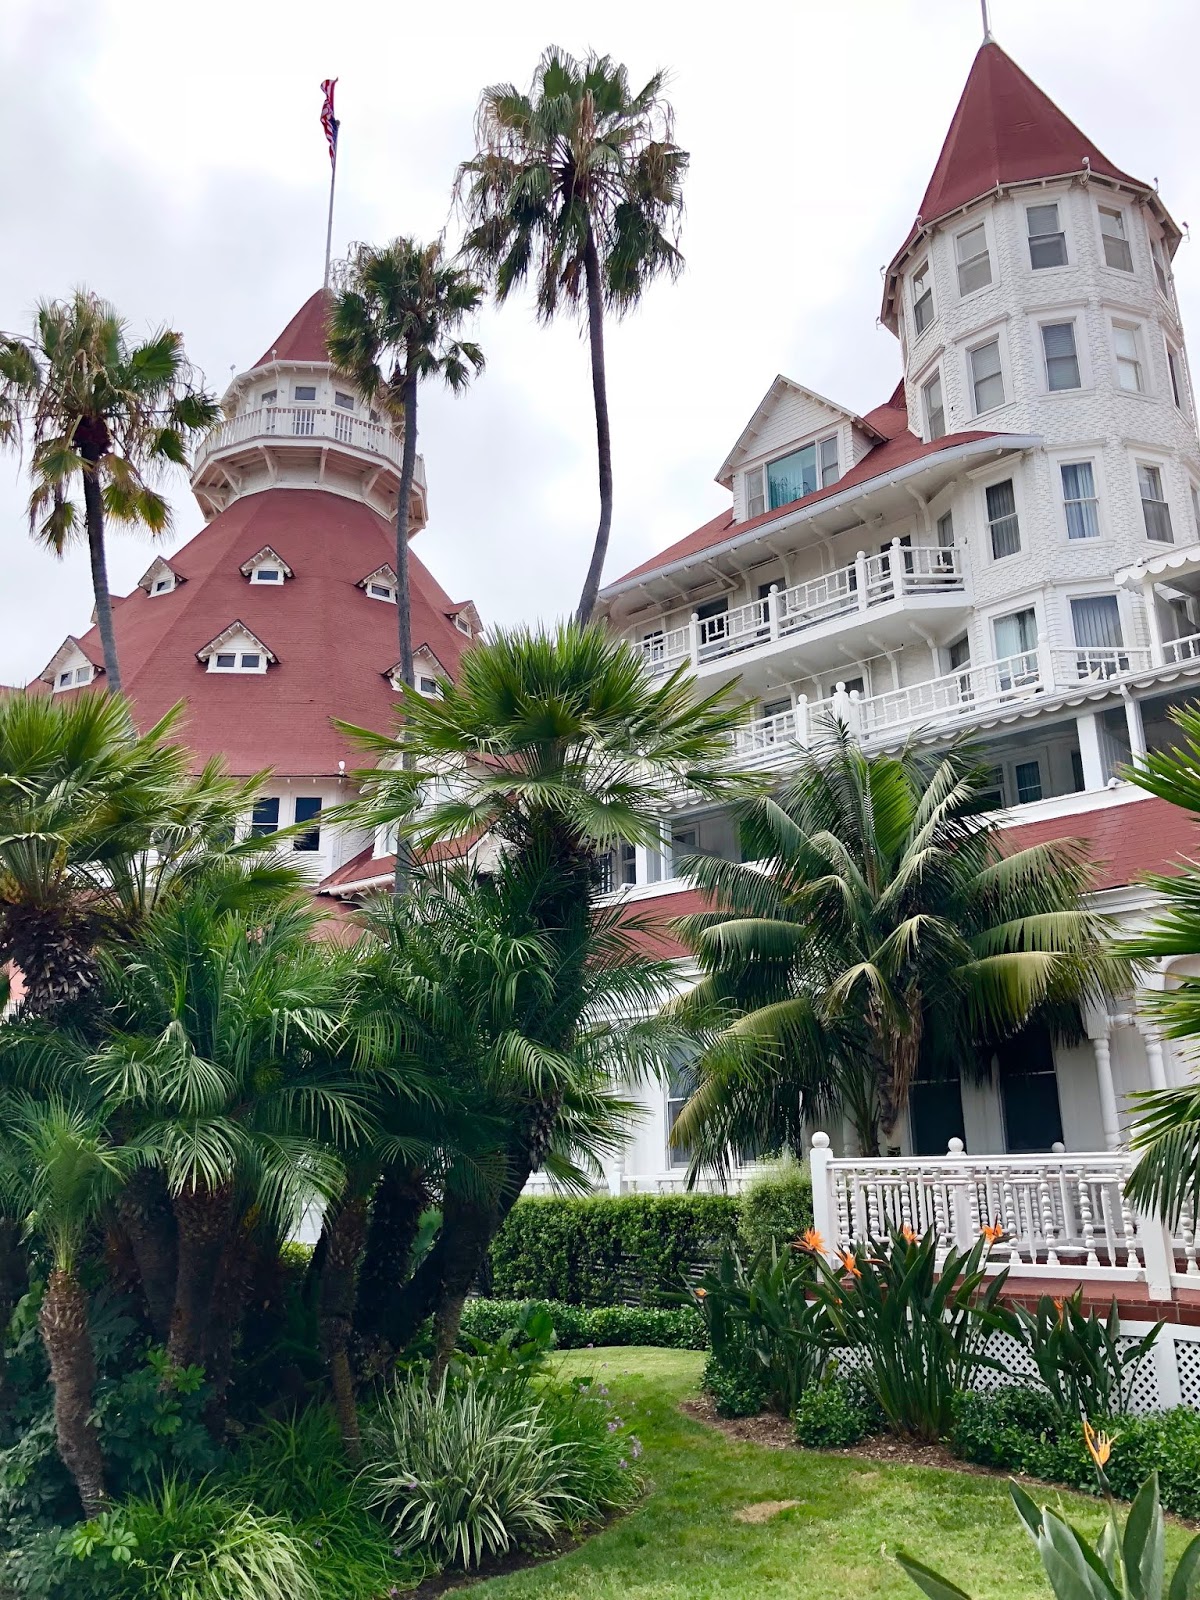 Hotel Del Coronado, San Diego, California, August 2018